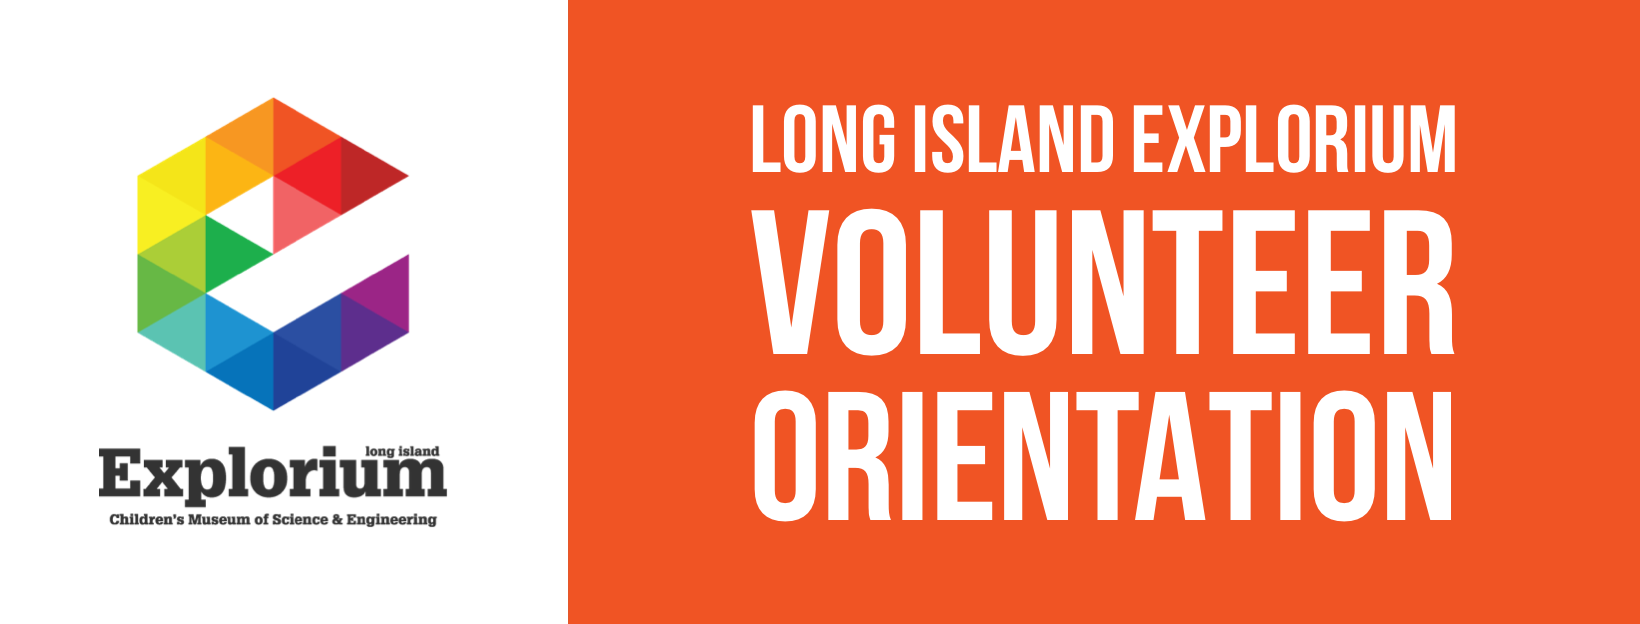 Volunteer Orientation Long Island Explorium